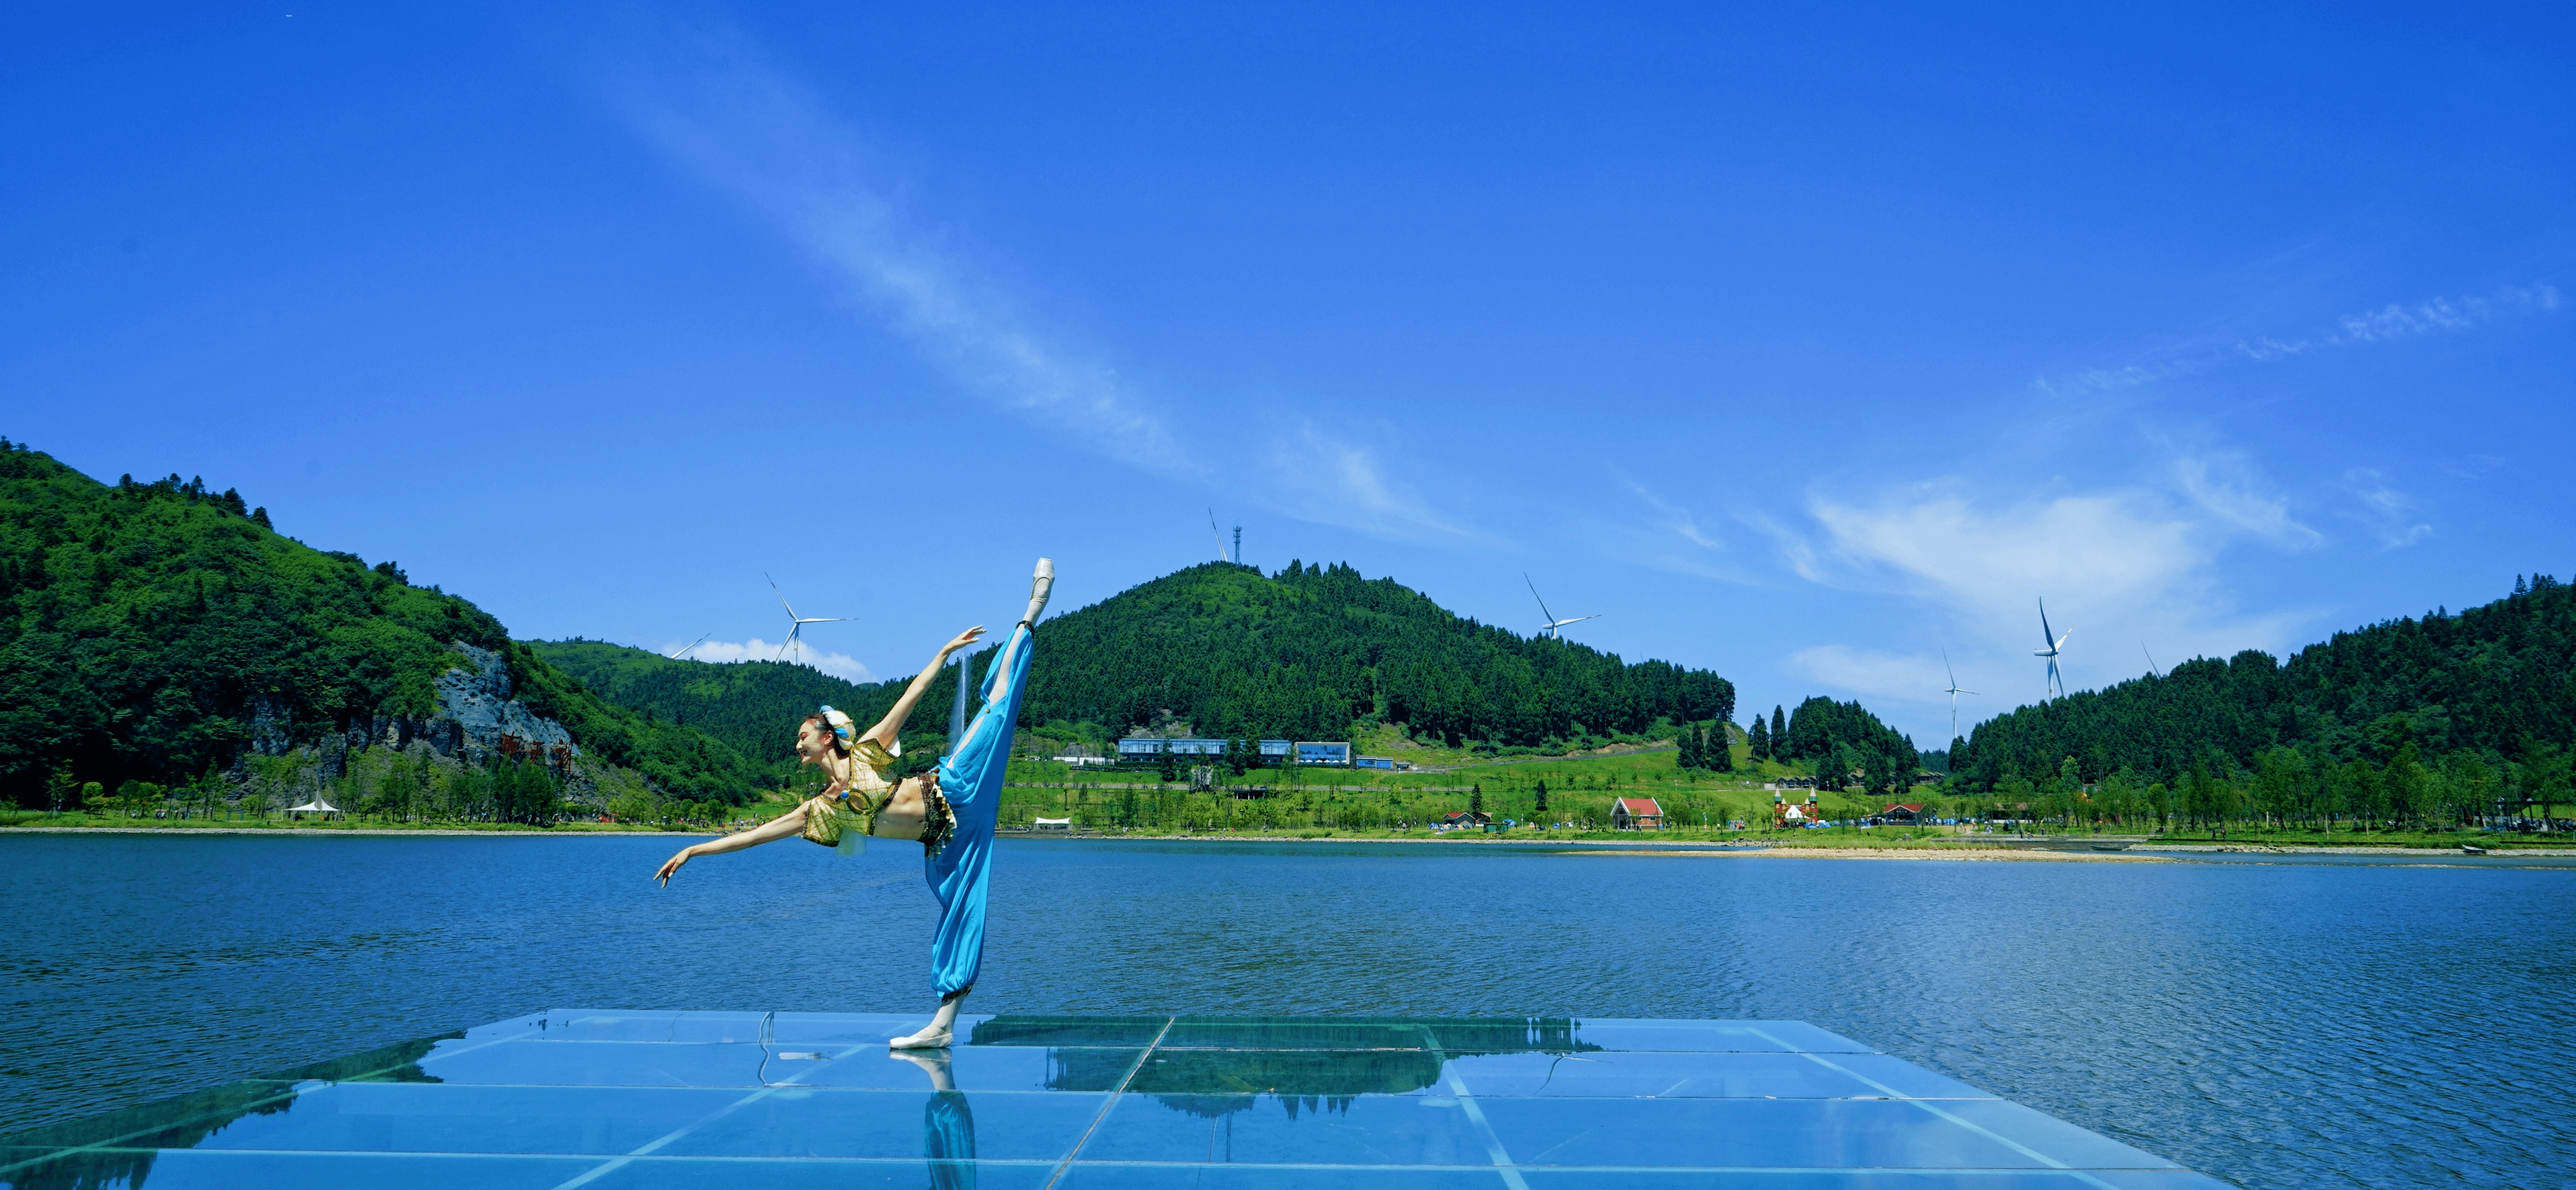 这个暑期,重庆丰都南天湖国家级旅游度假区邀您重启夏天狂欢之旅